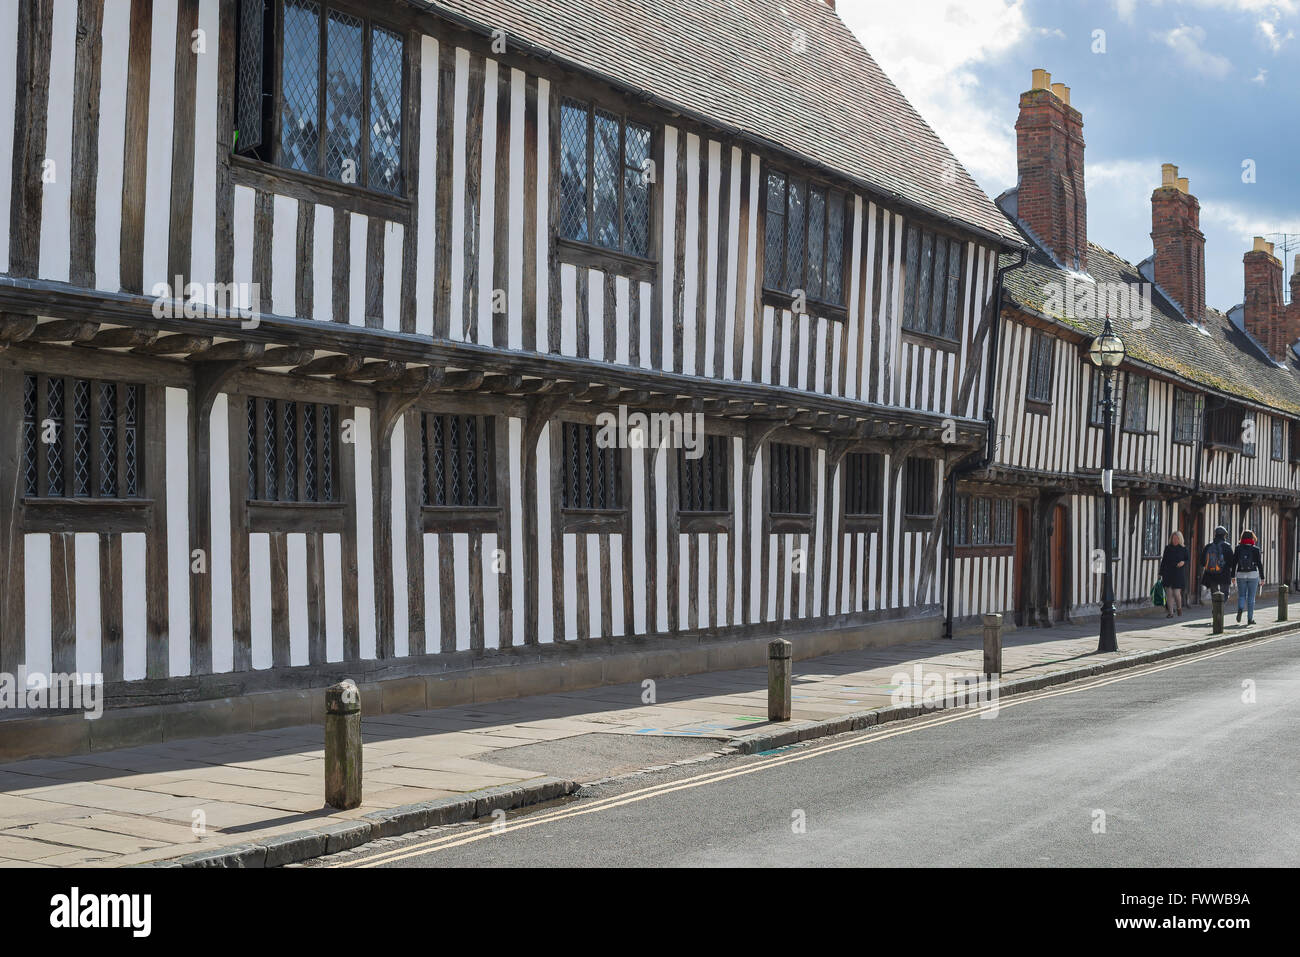 Mittelalterbau England Großbritannien, Blick auf eine Reihe typischer spätmittelalterlichen Fachwerkhäuser in der Church Street, Stratford Upon Avon, England, Großbritannien Stockfoto